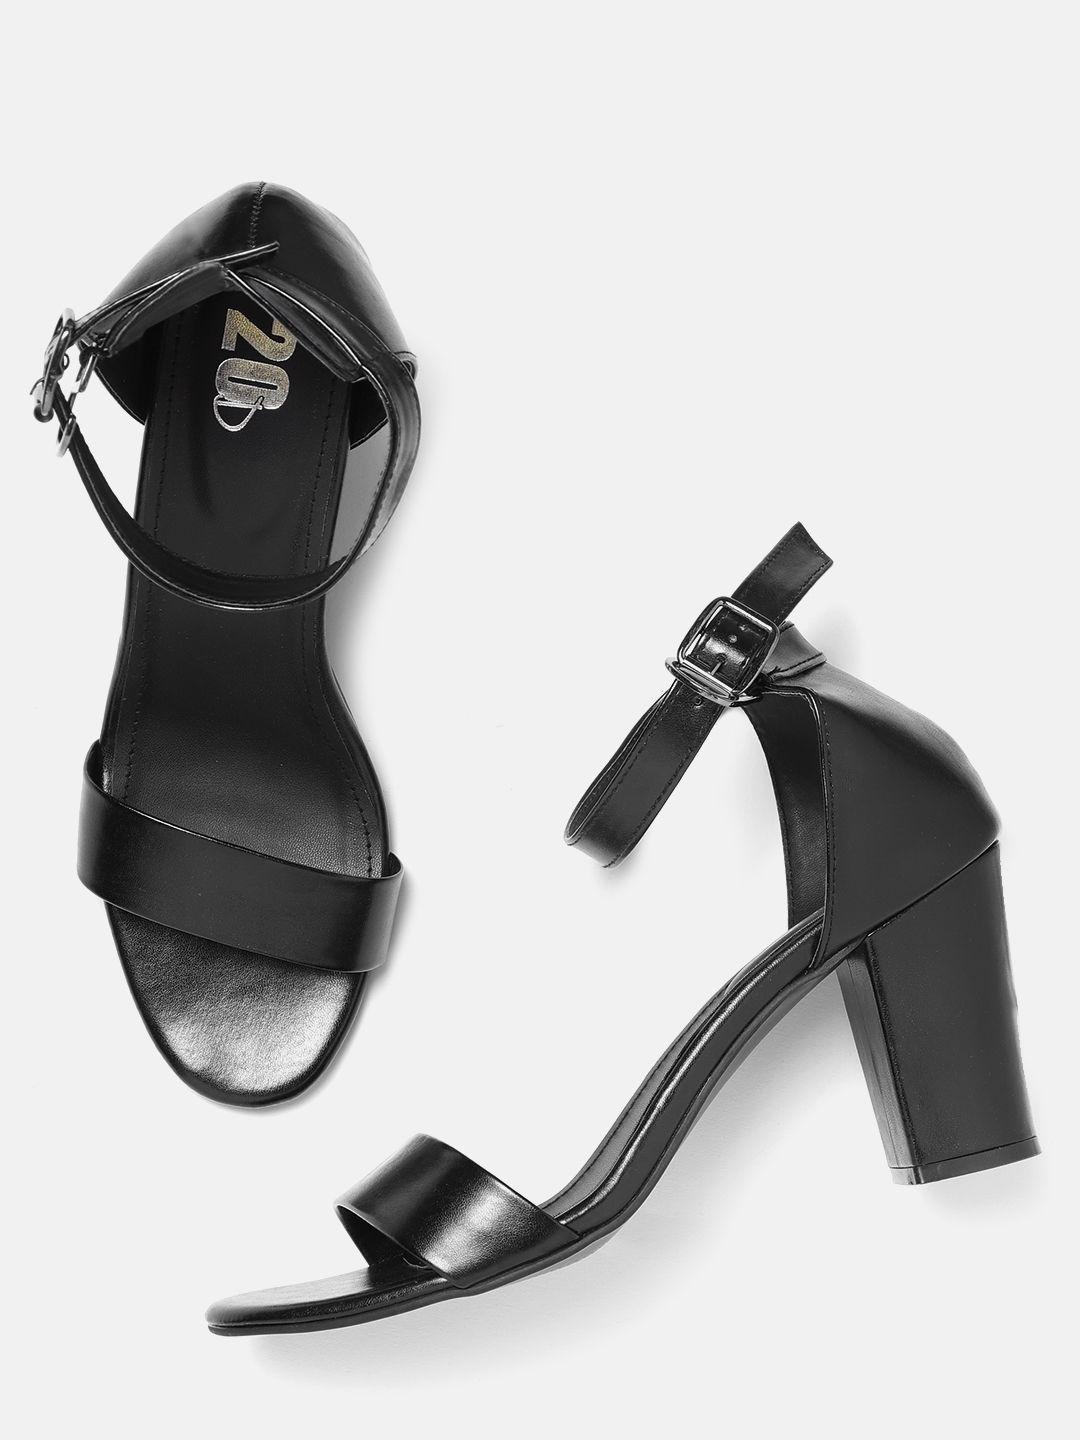 20dresses women black solid block heels